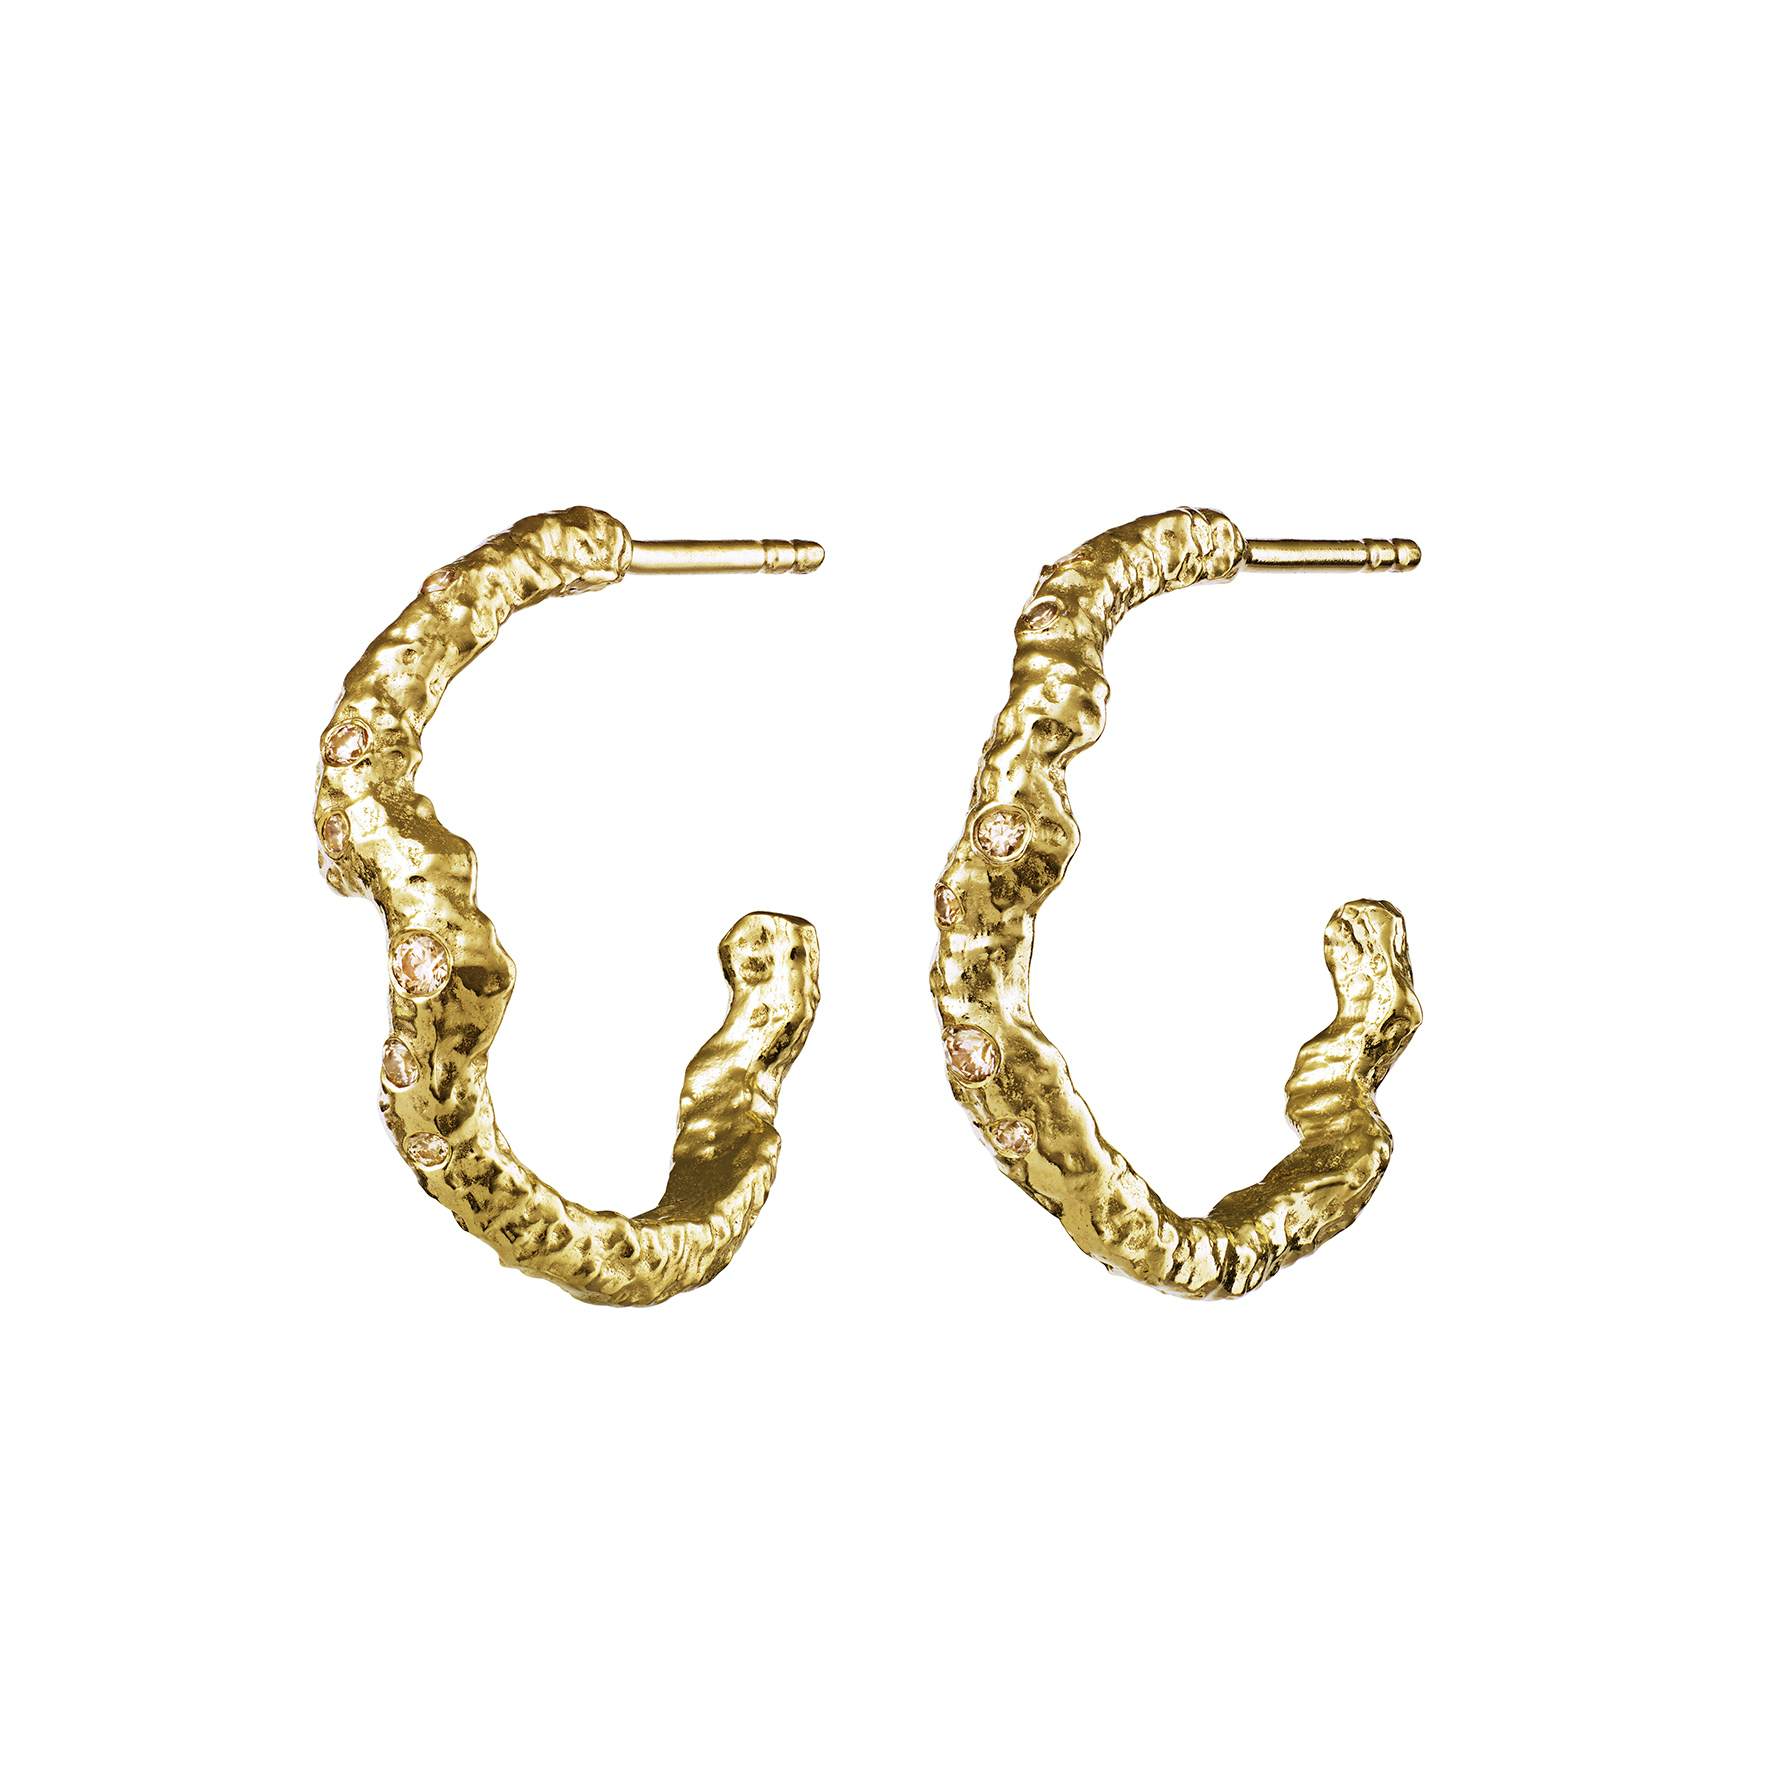 Janine Grande Earrings from Maanesten in Goldplated-Silver Sterling 925